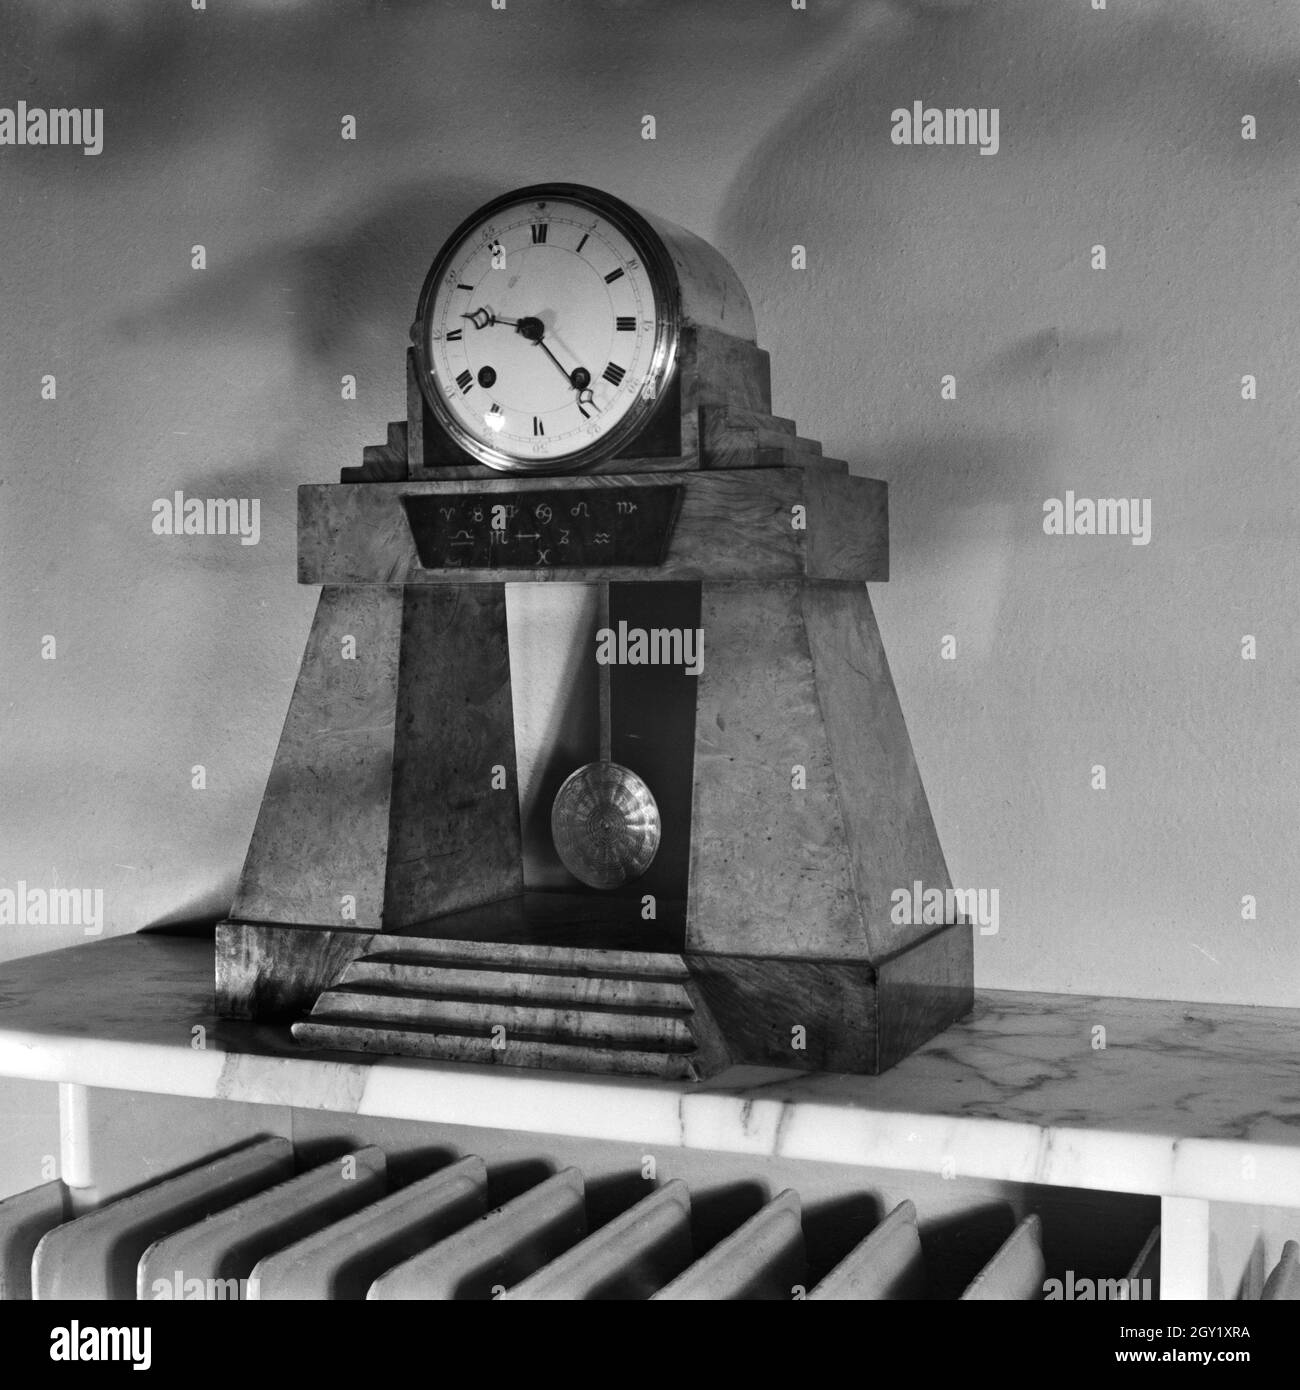 Reproduction aus der Sammlung Erich Retzlaff: Uhr auf einem Kaminsims, Deutschland 1930er Jahre. Reproduktion aus der Sammlung Erich Retzlaff: Uhr auf einem Schimneypiece, Deutschland 1930er Jahre. Stockfoto